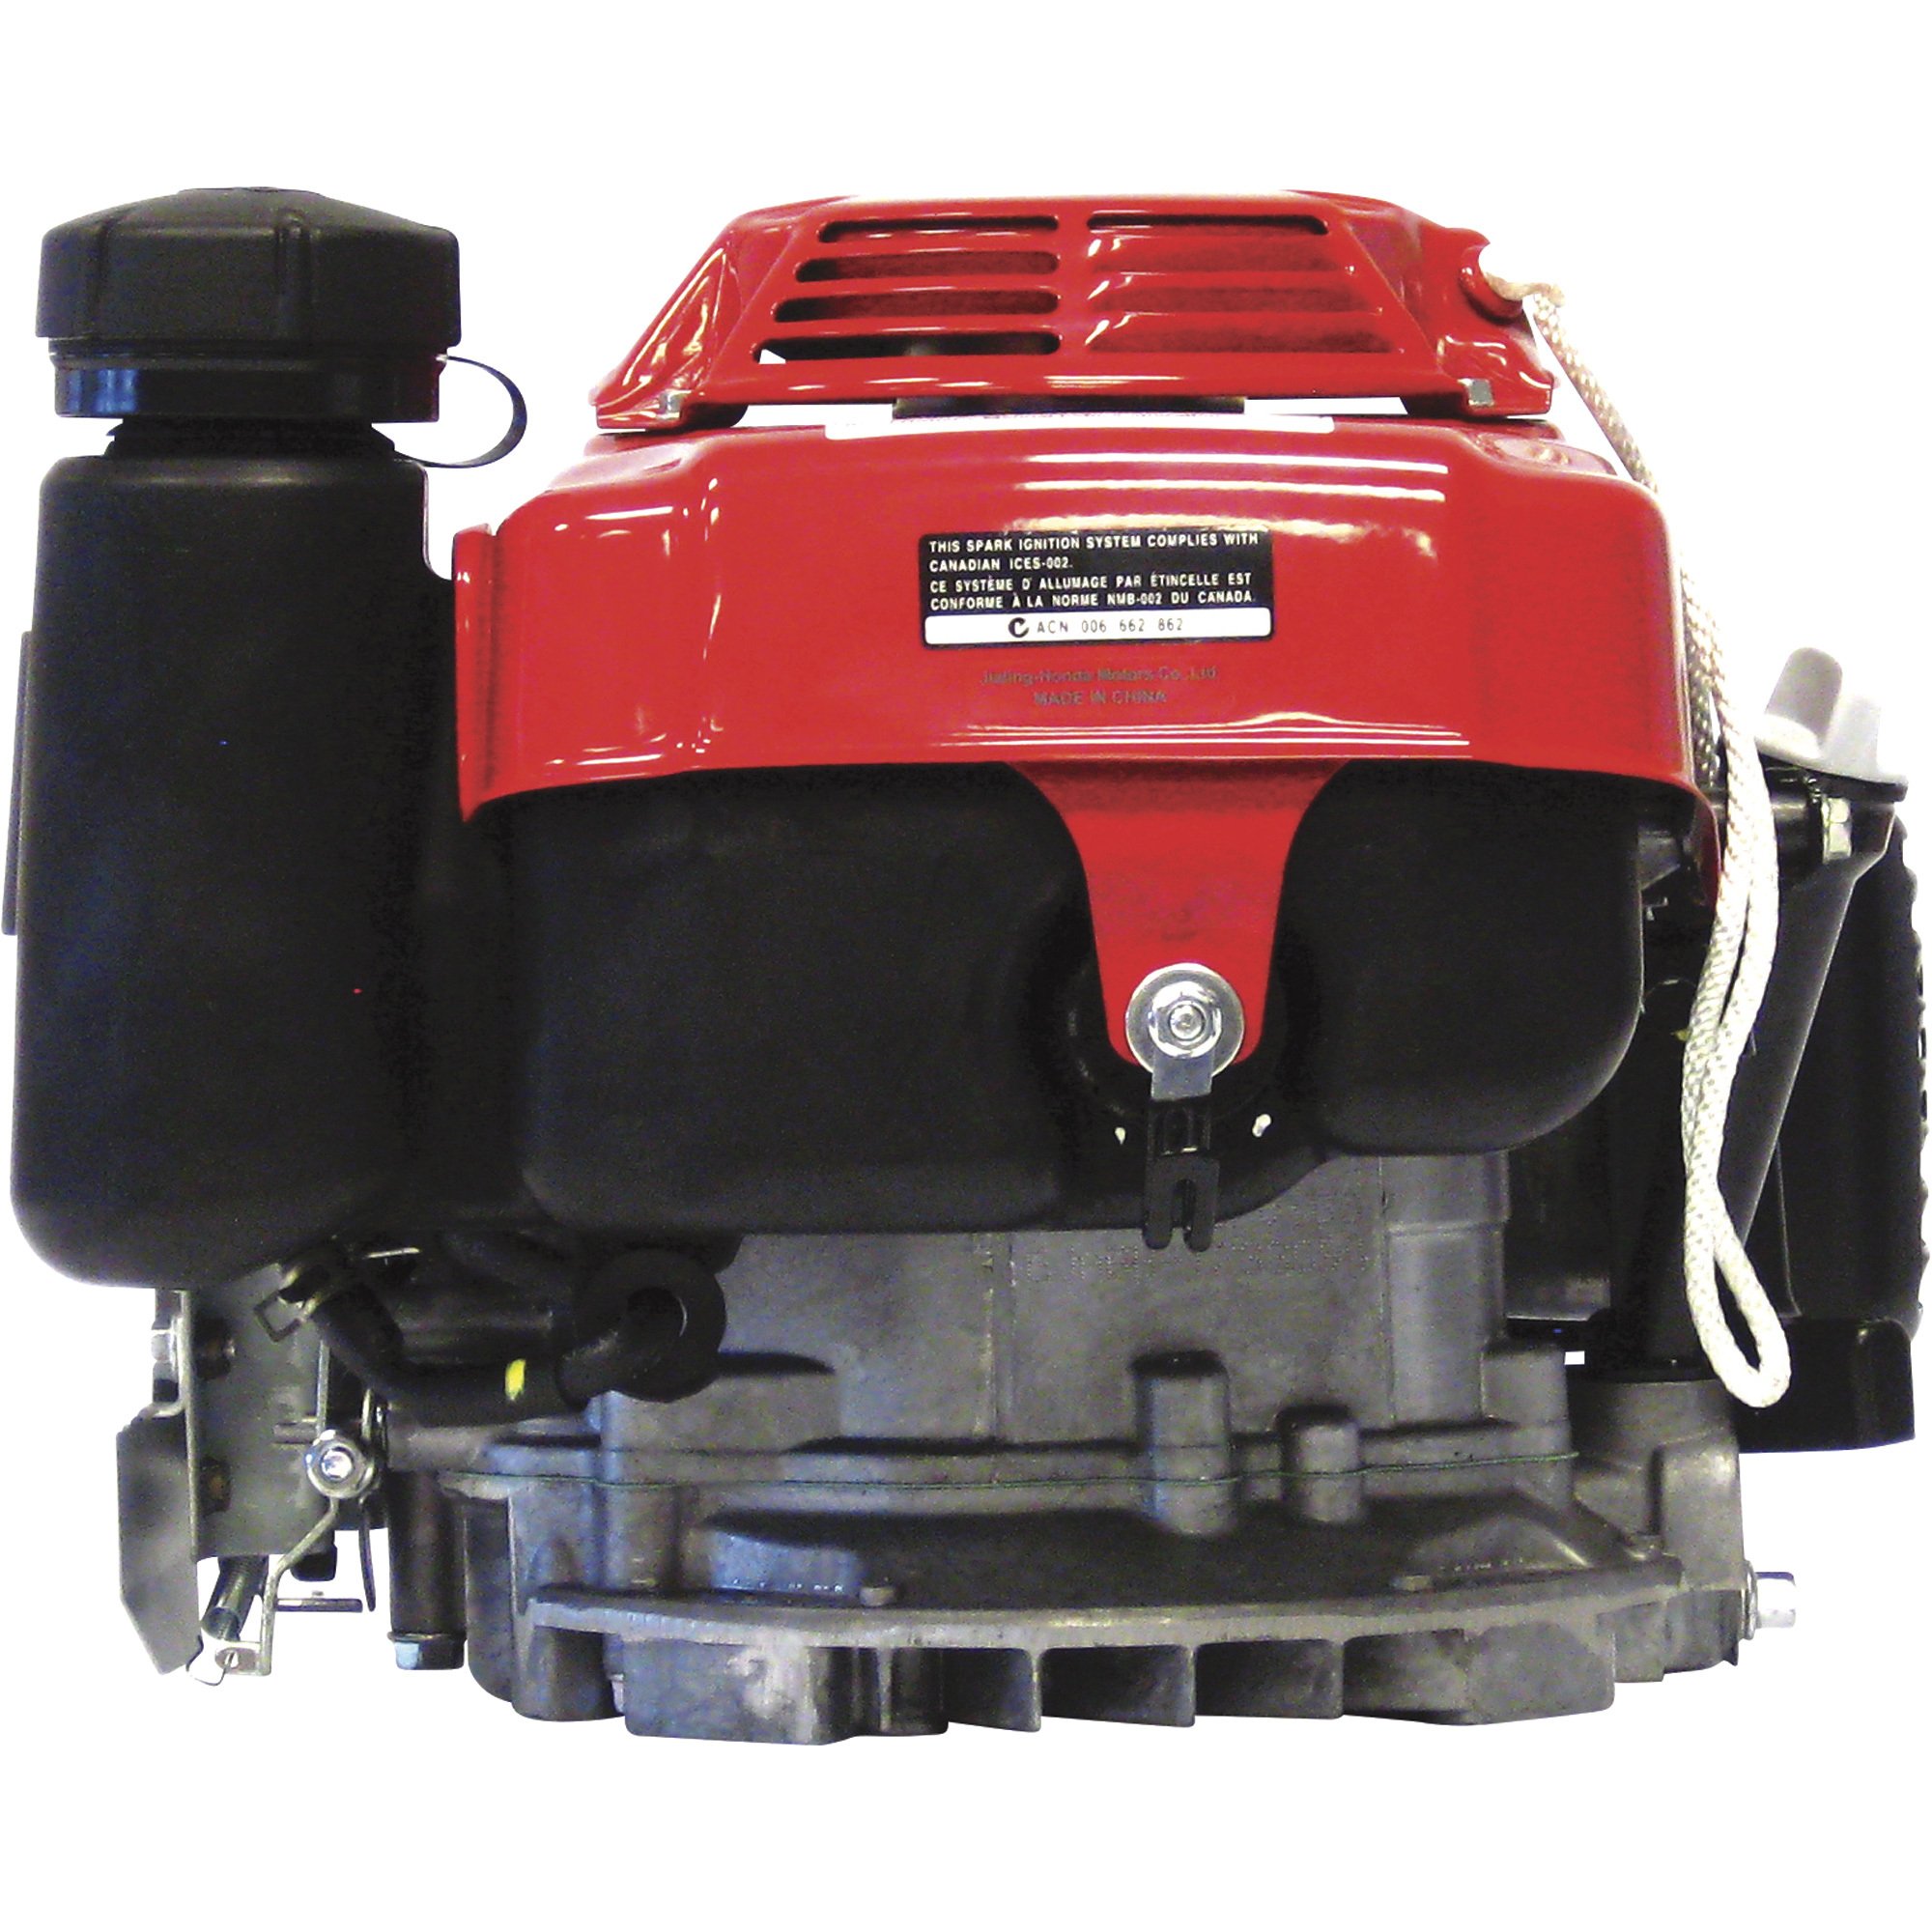 Fuel tank for Honda GXV160 5.5HP OHV vertical shaft motor engine